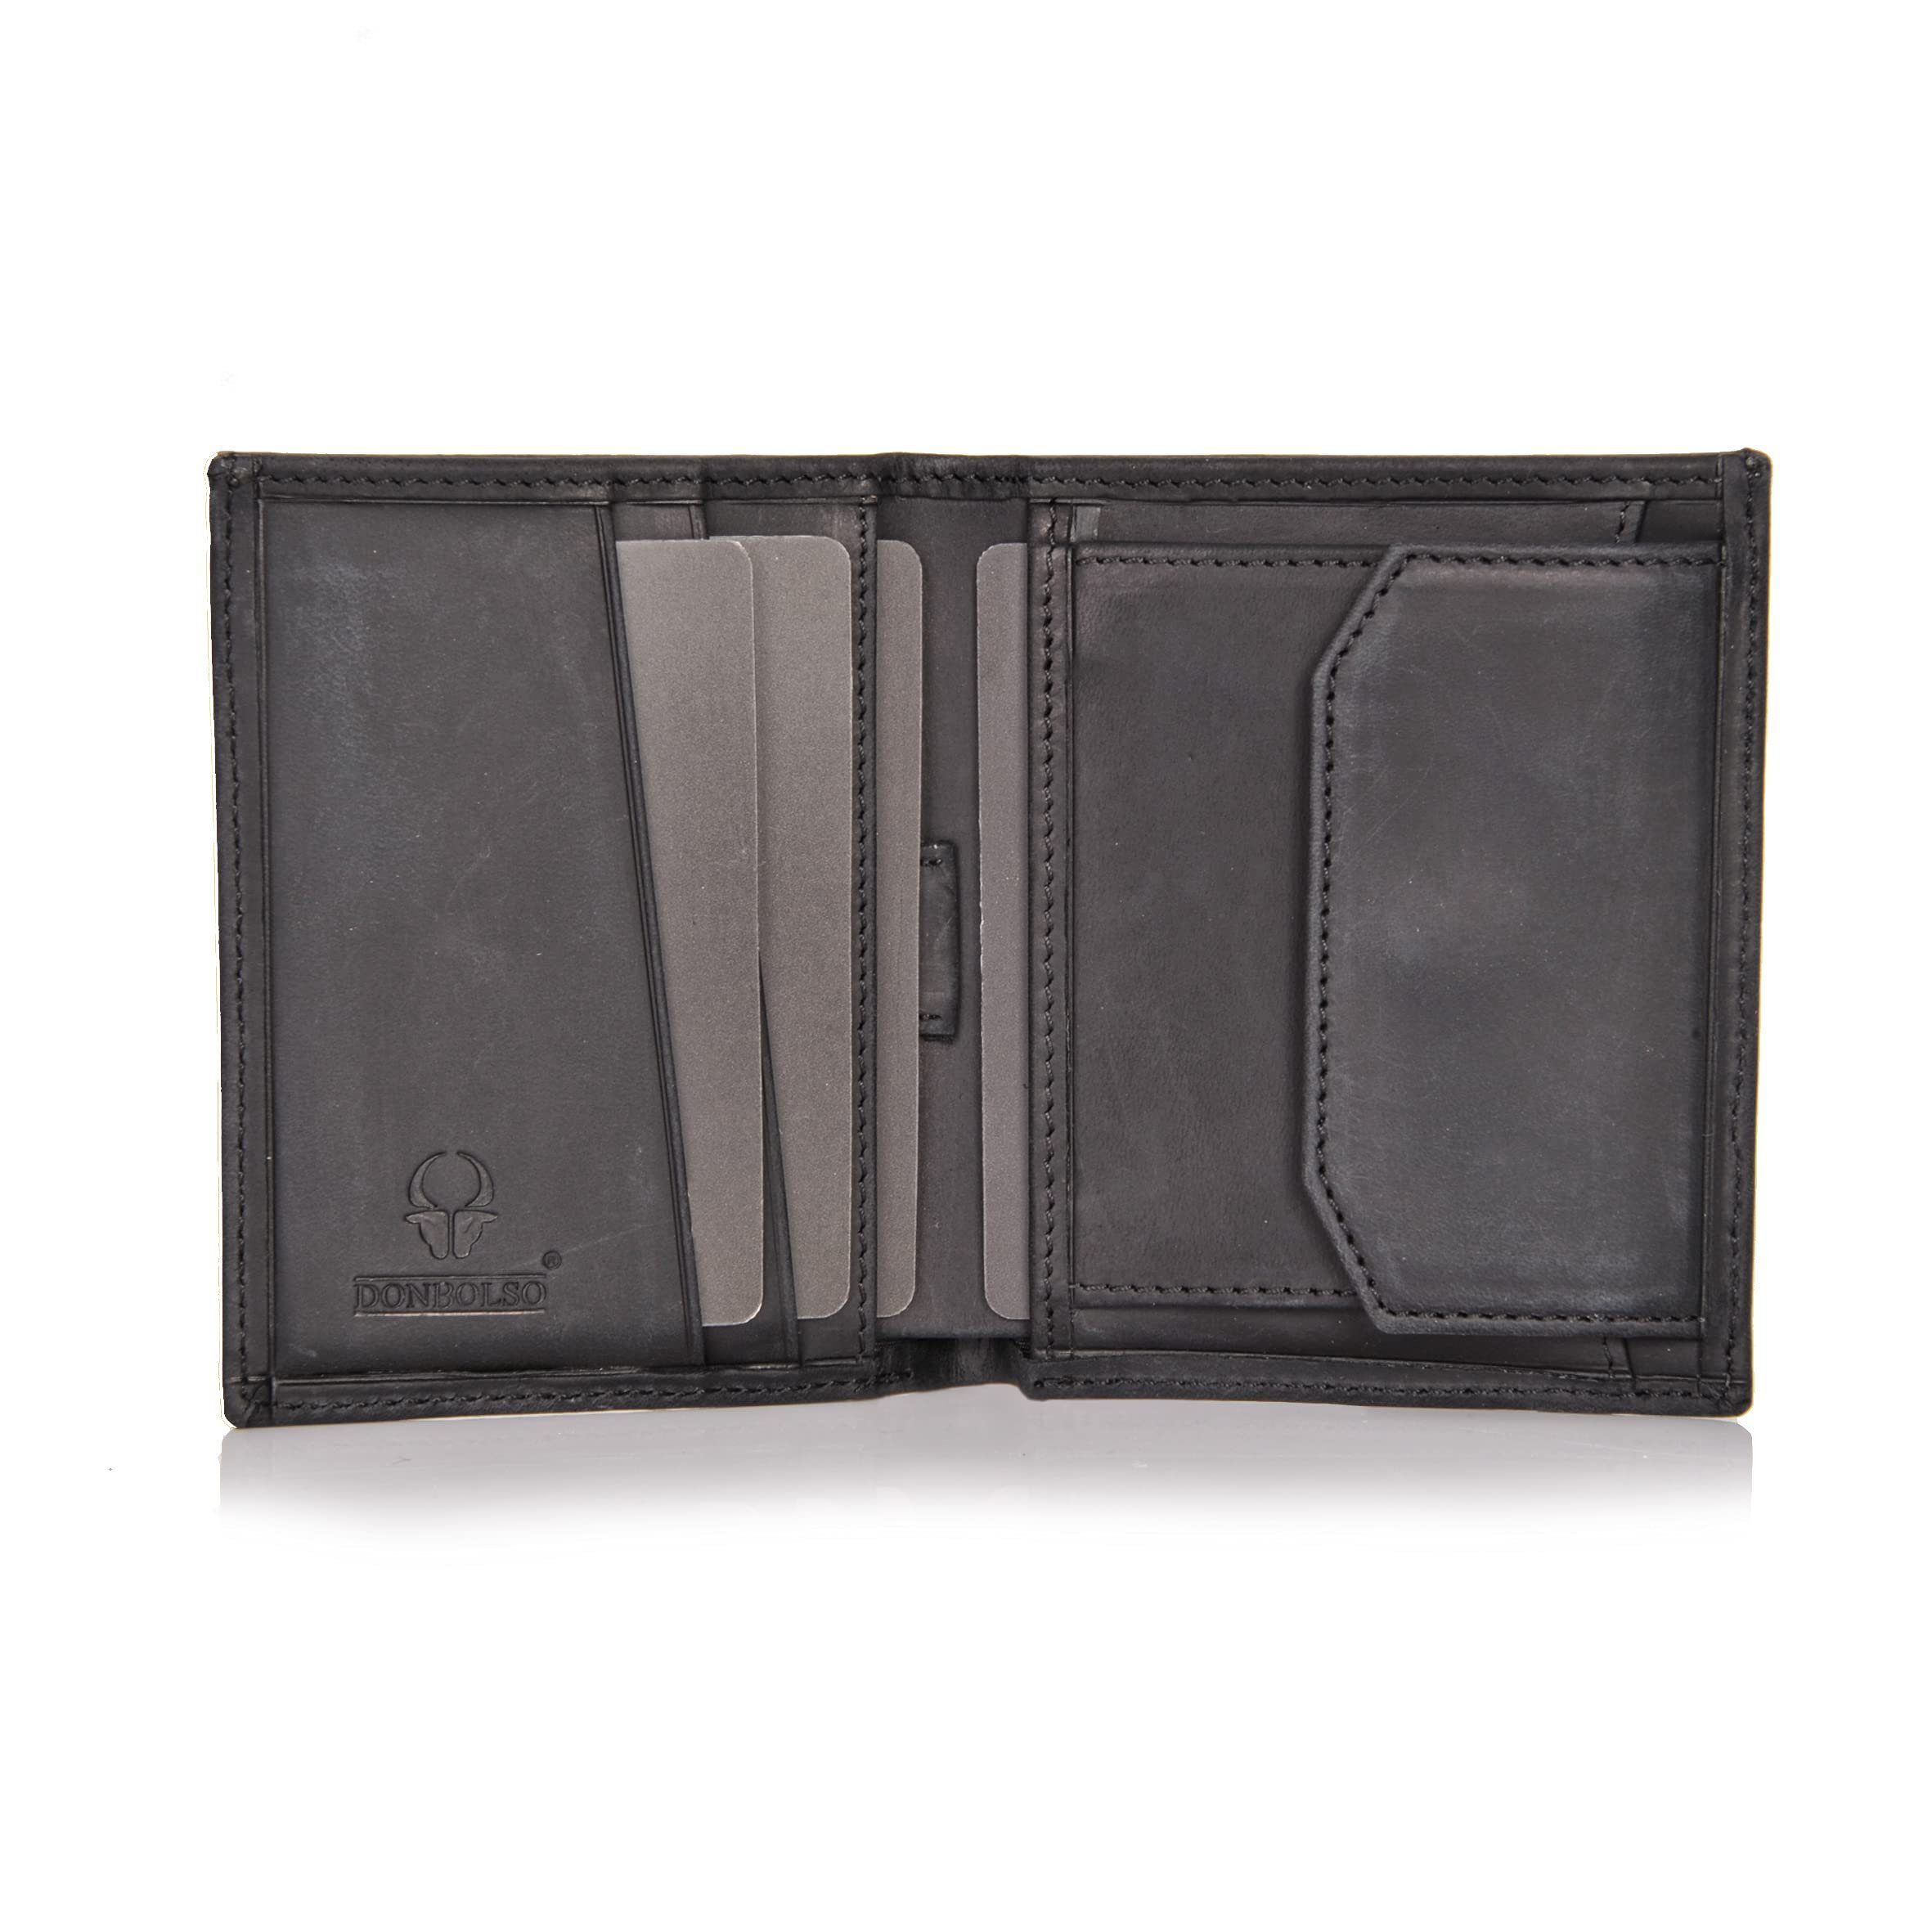 Donbolso Mini Geldbörse Slim RFID Schutz Mit Geldbeutel Vintage Kartenfächer, 6 Wallet Echtleder Schwarz Mnzfachvintage